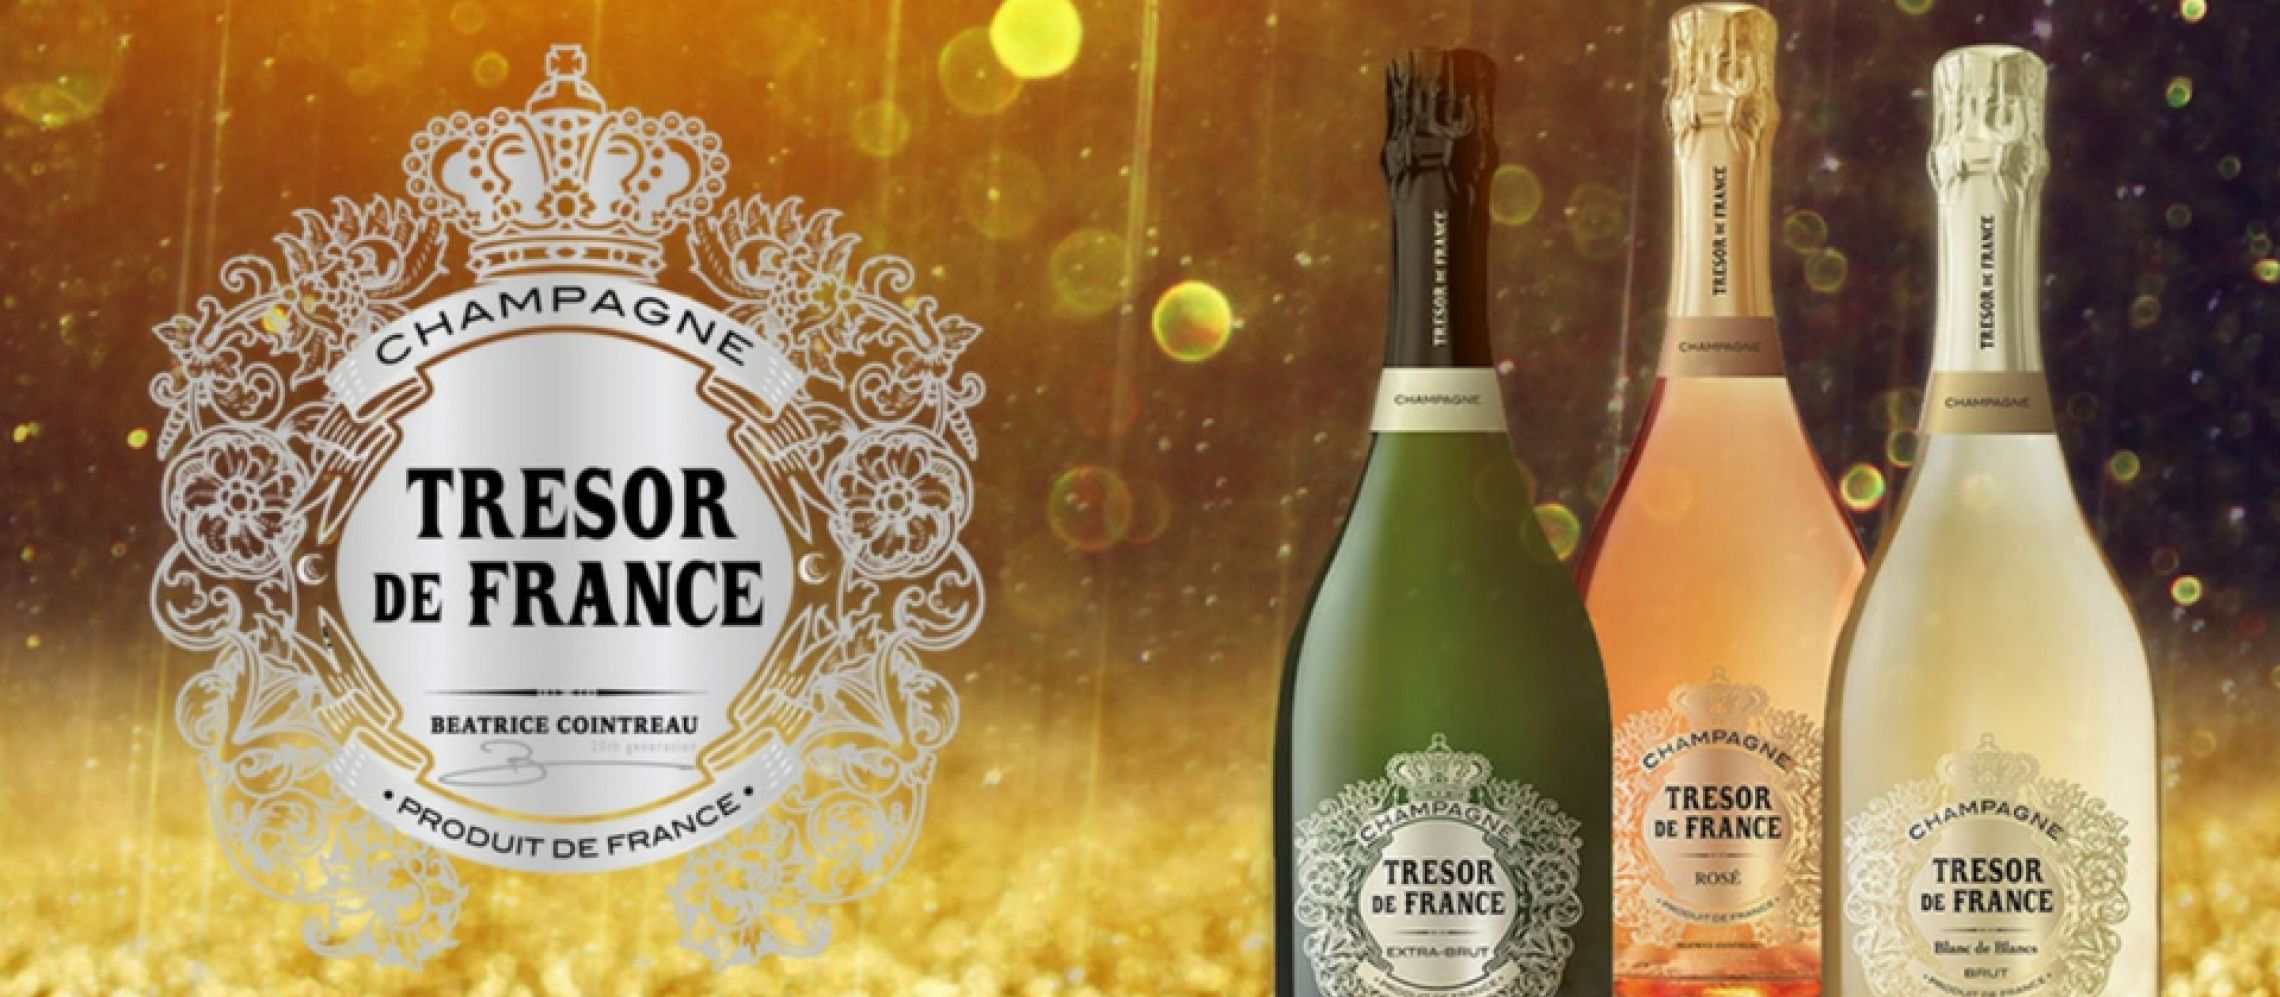 Photo for: Champagne Tresor de France- Serving Pride of France